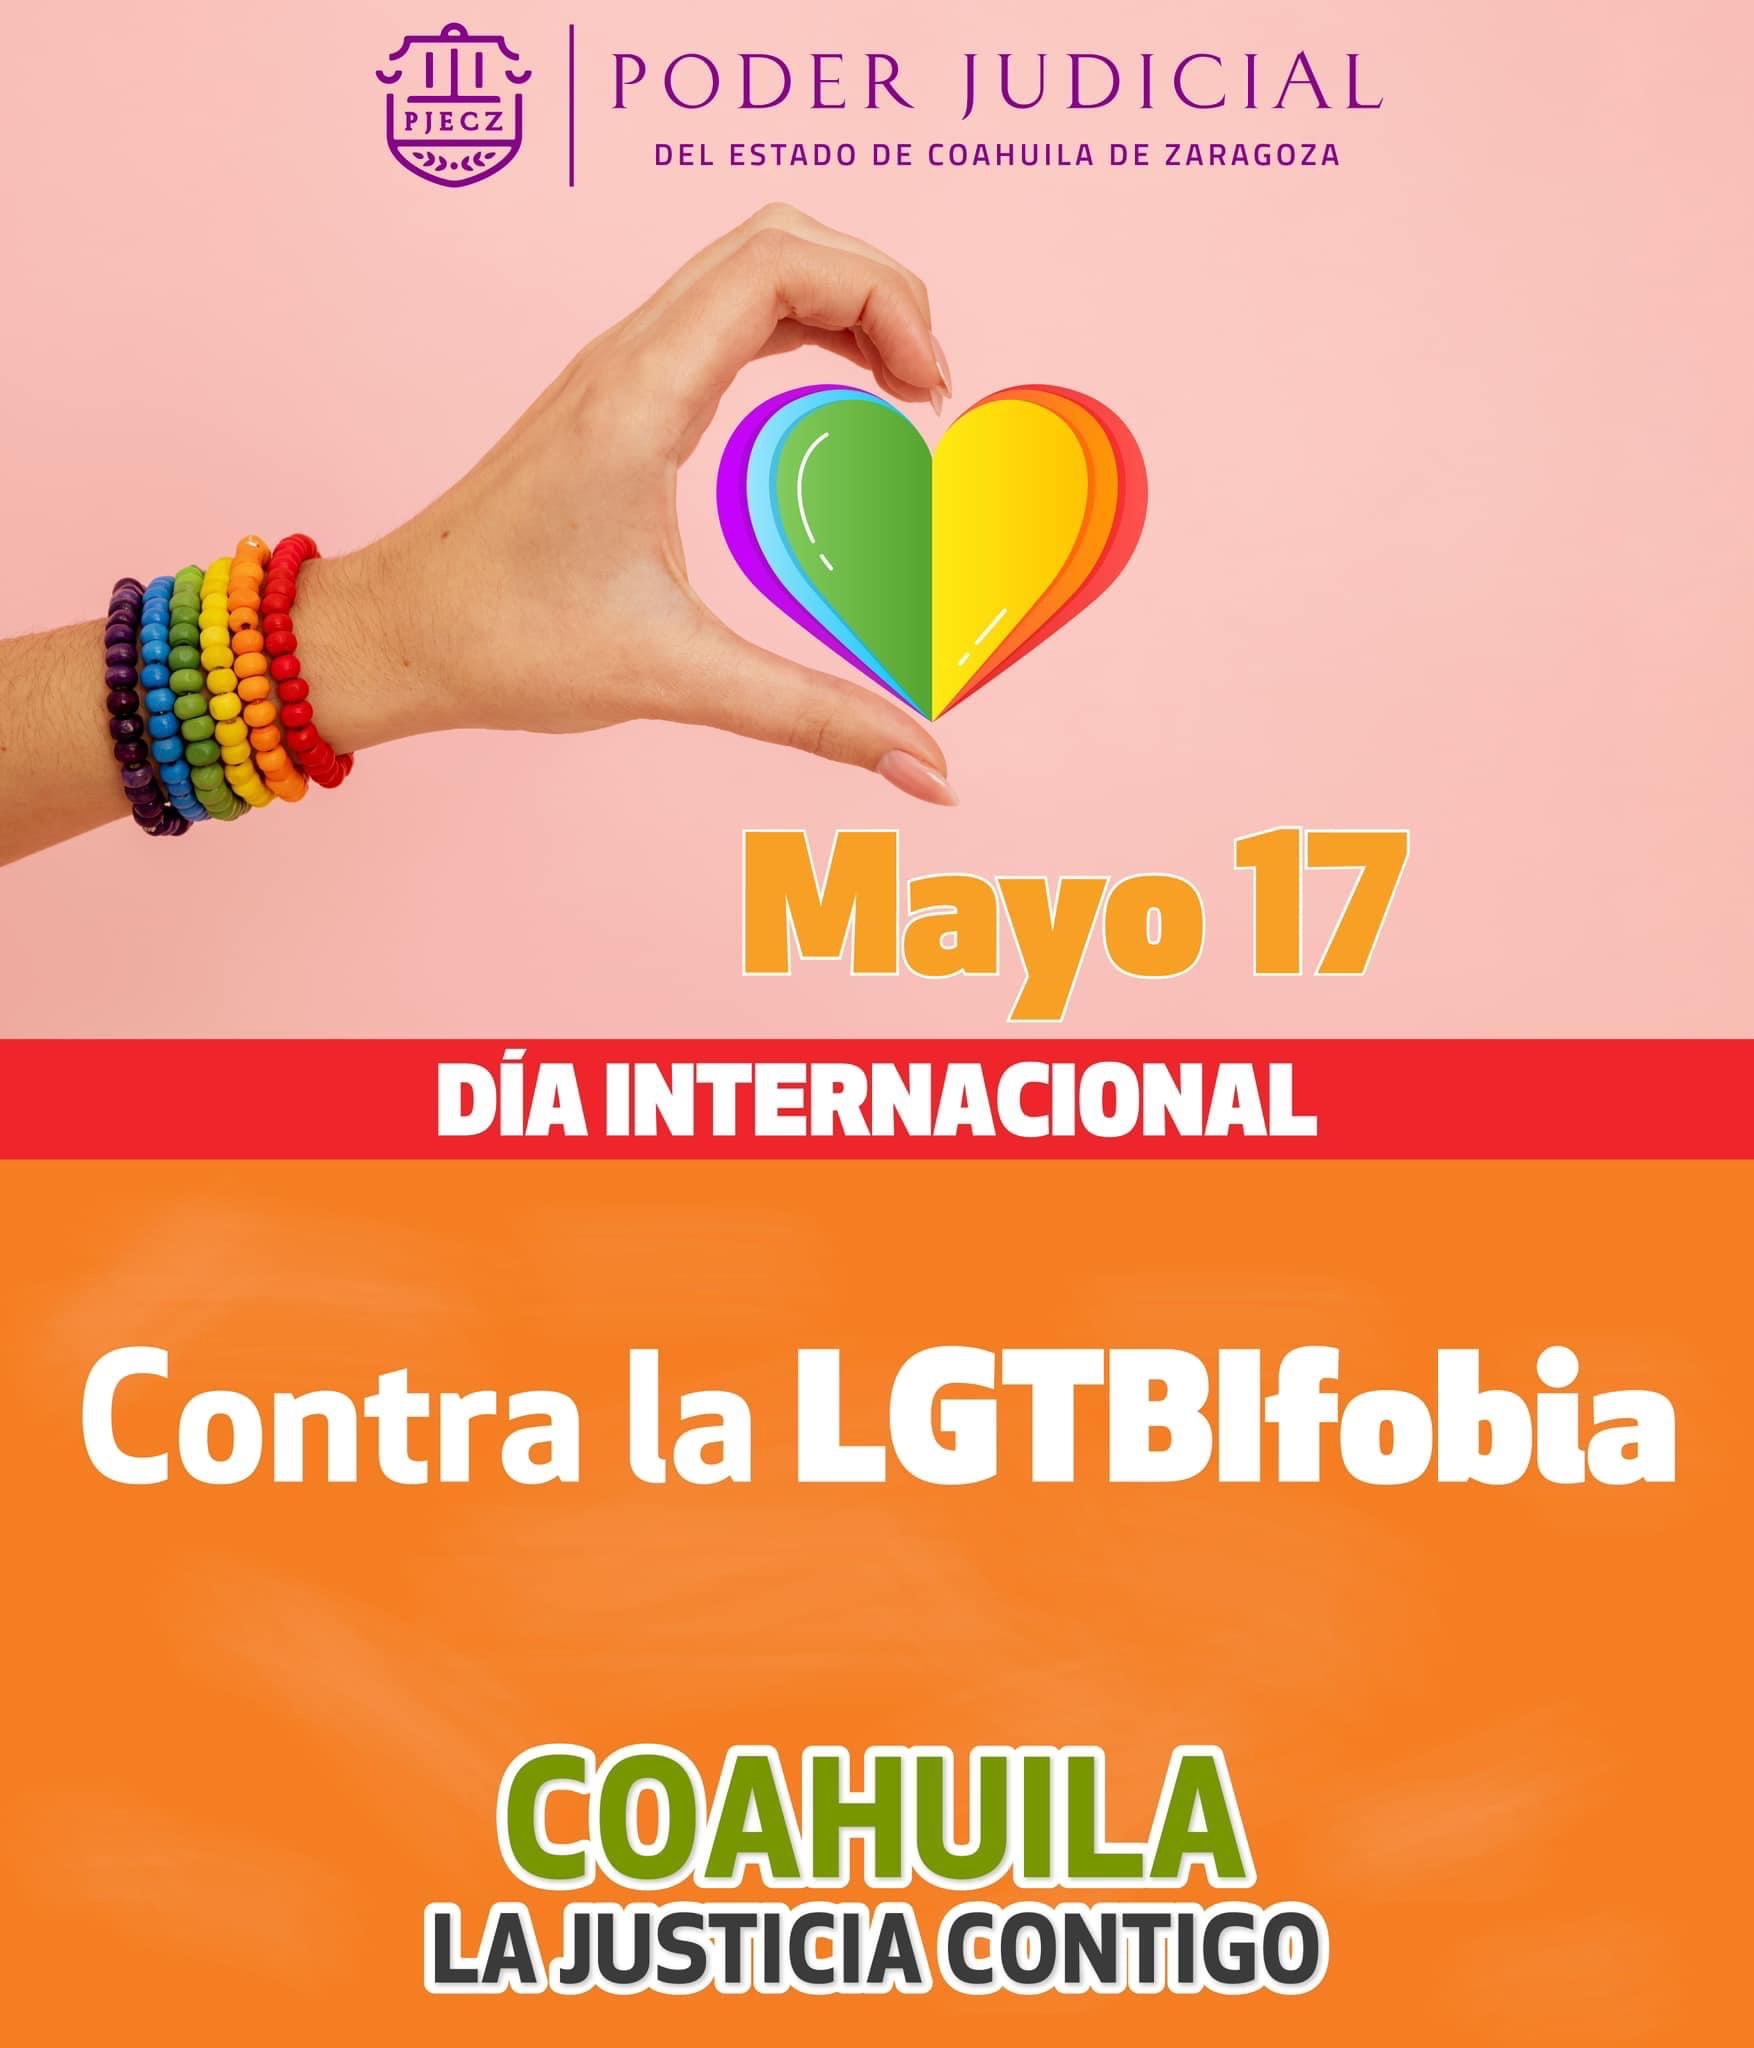 El PJECZ reafirmamos nuestro compromiso con la justicia y la tutela de los derechos de todas las personas, sin importar su identidad de género y orientación sexual. 